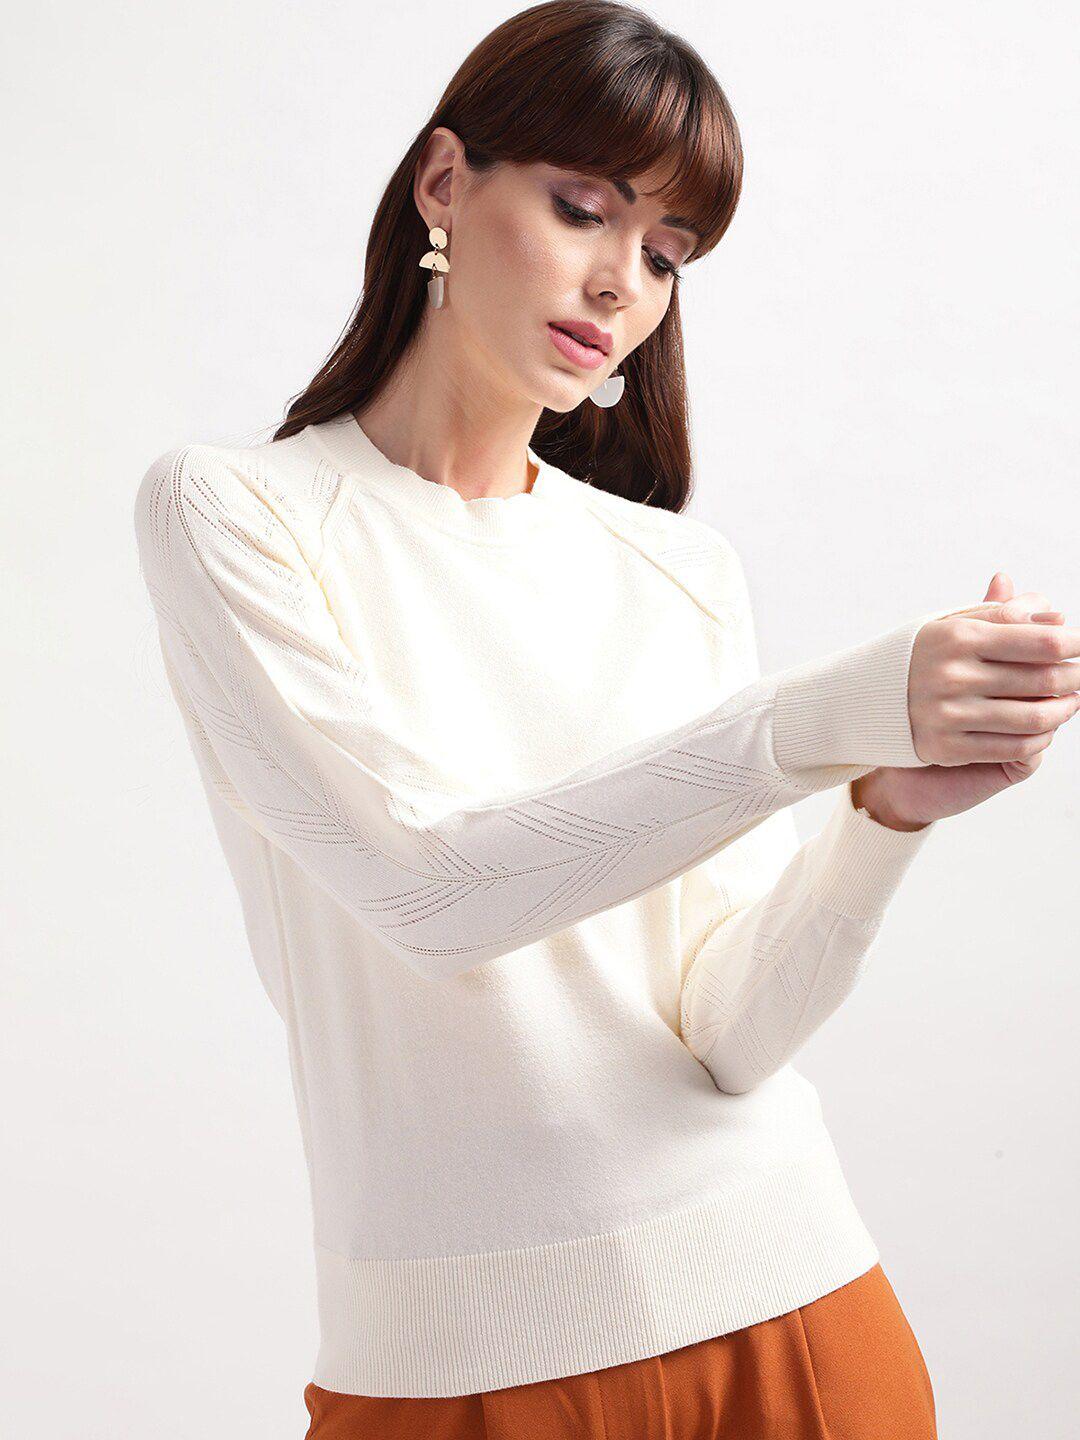 centrestage-women-white-pullover